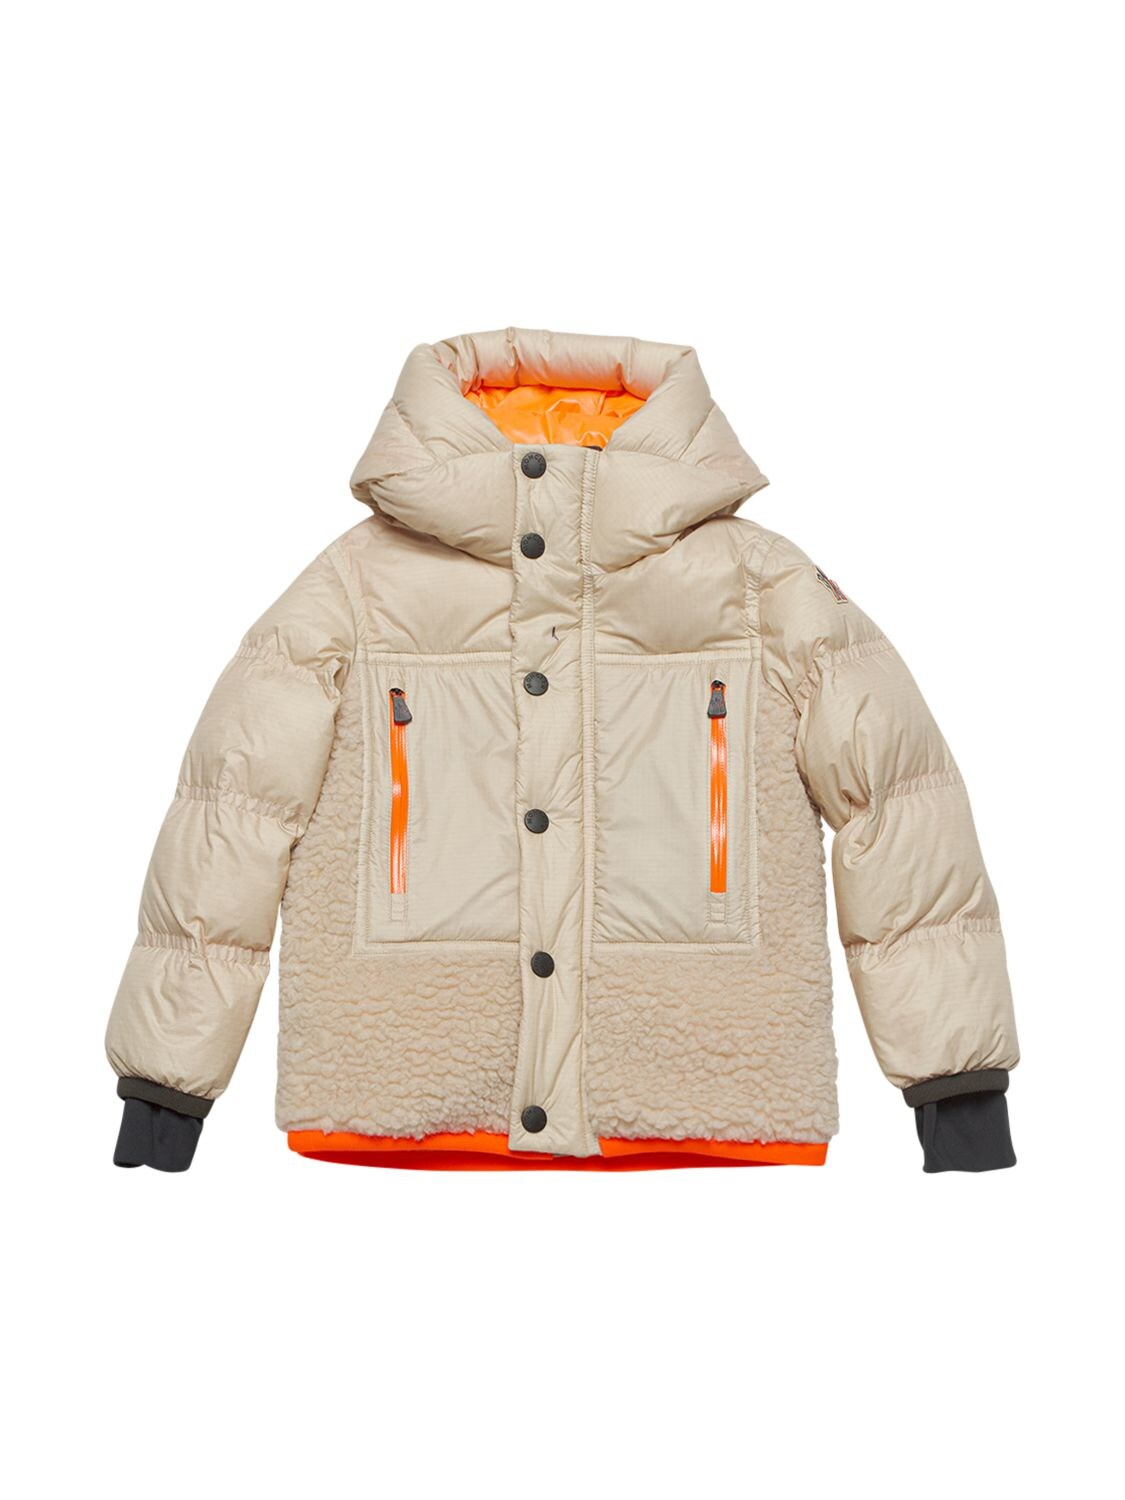 Moncler Grenoble Kids' Verlonnaz Nylon & Fleece Down Ski Jacket In Light Beige